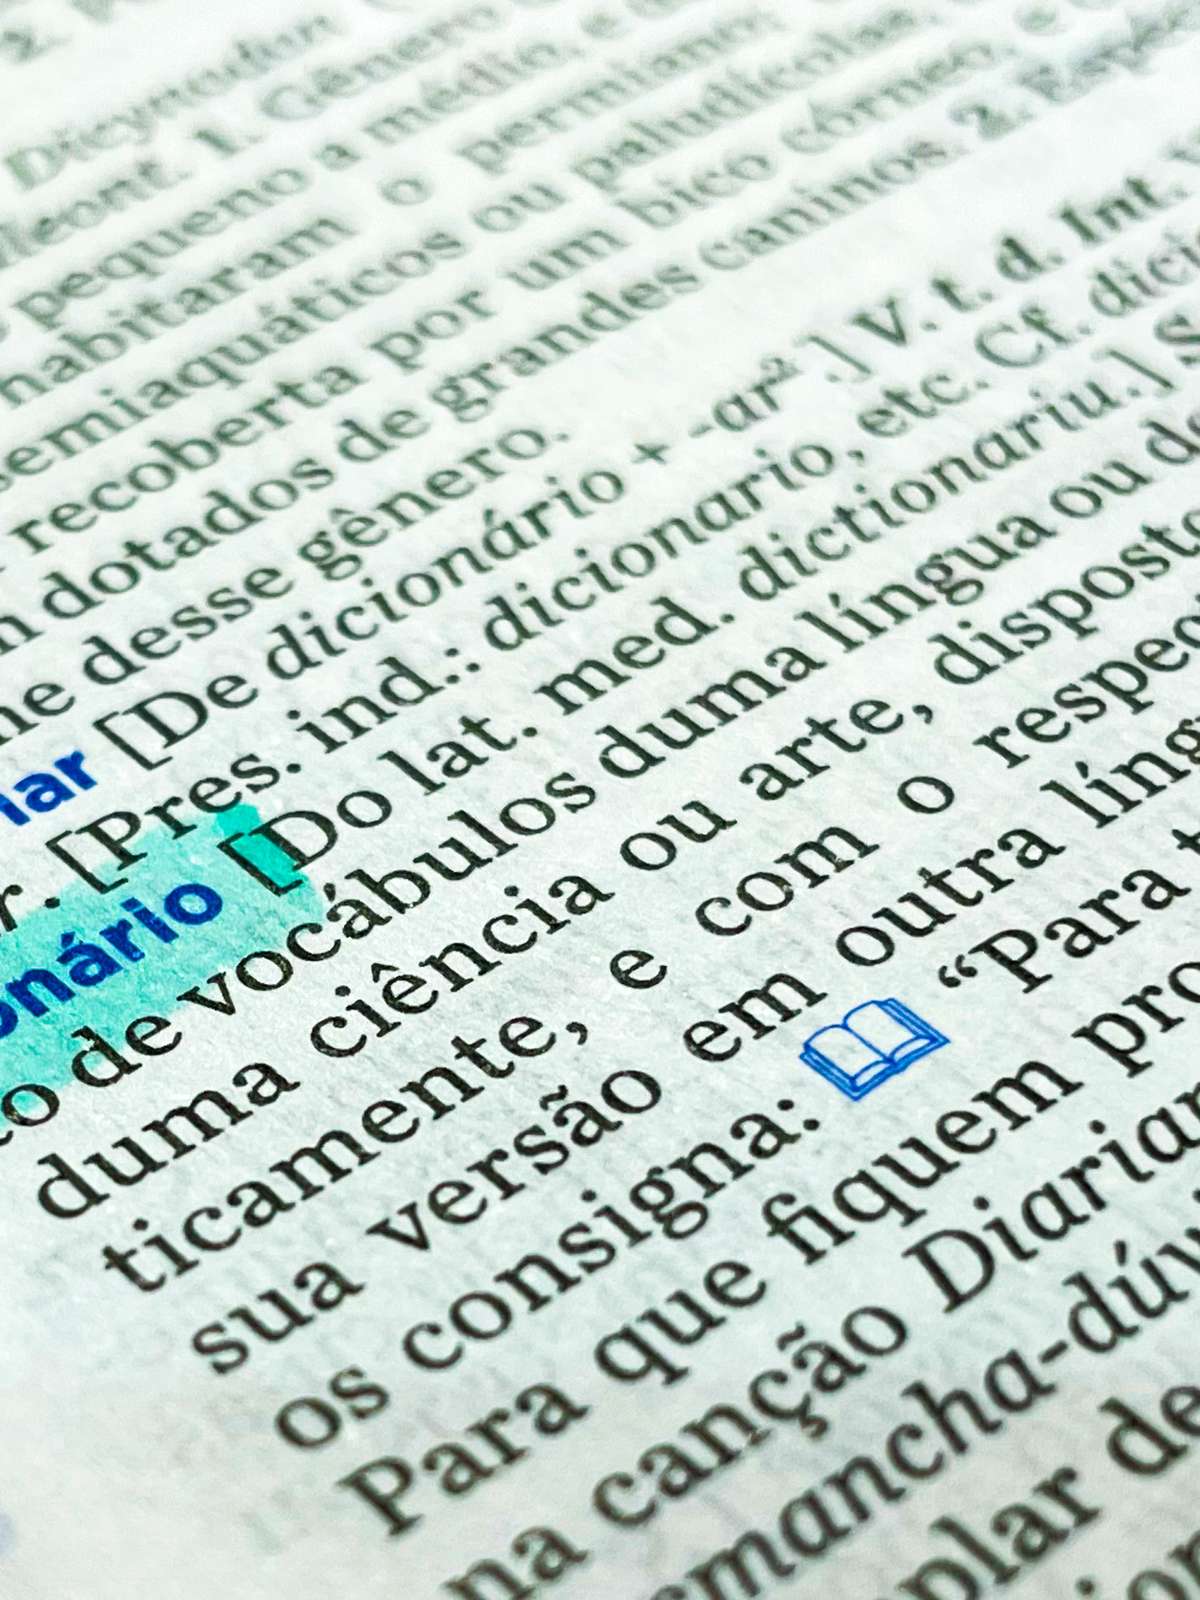 Cessar - Dicio, Dicionário Online de Português